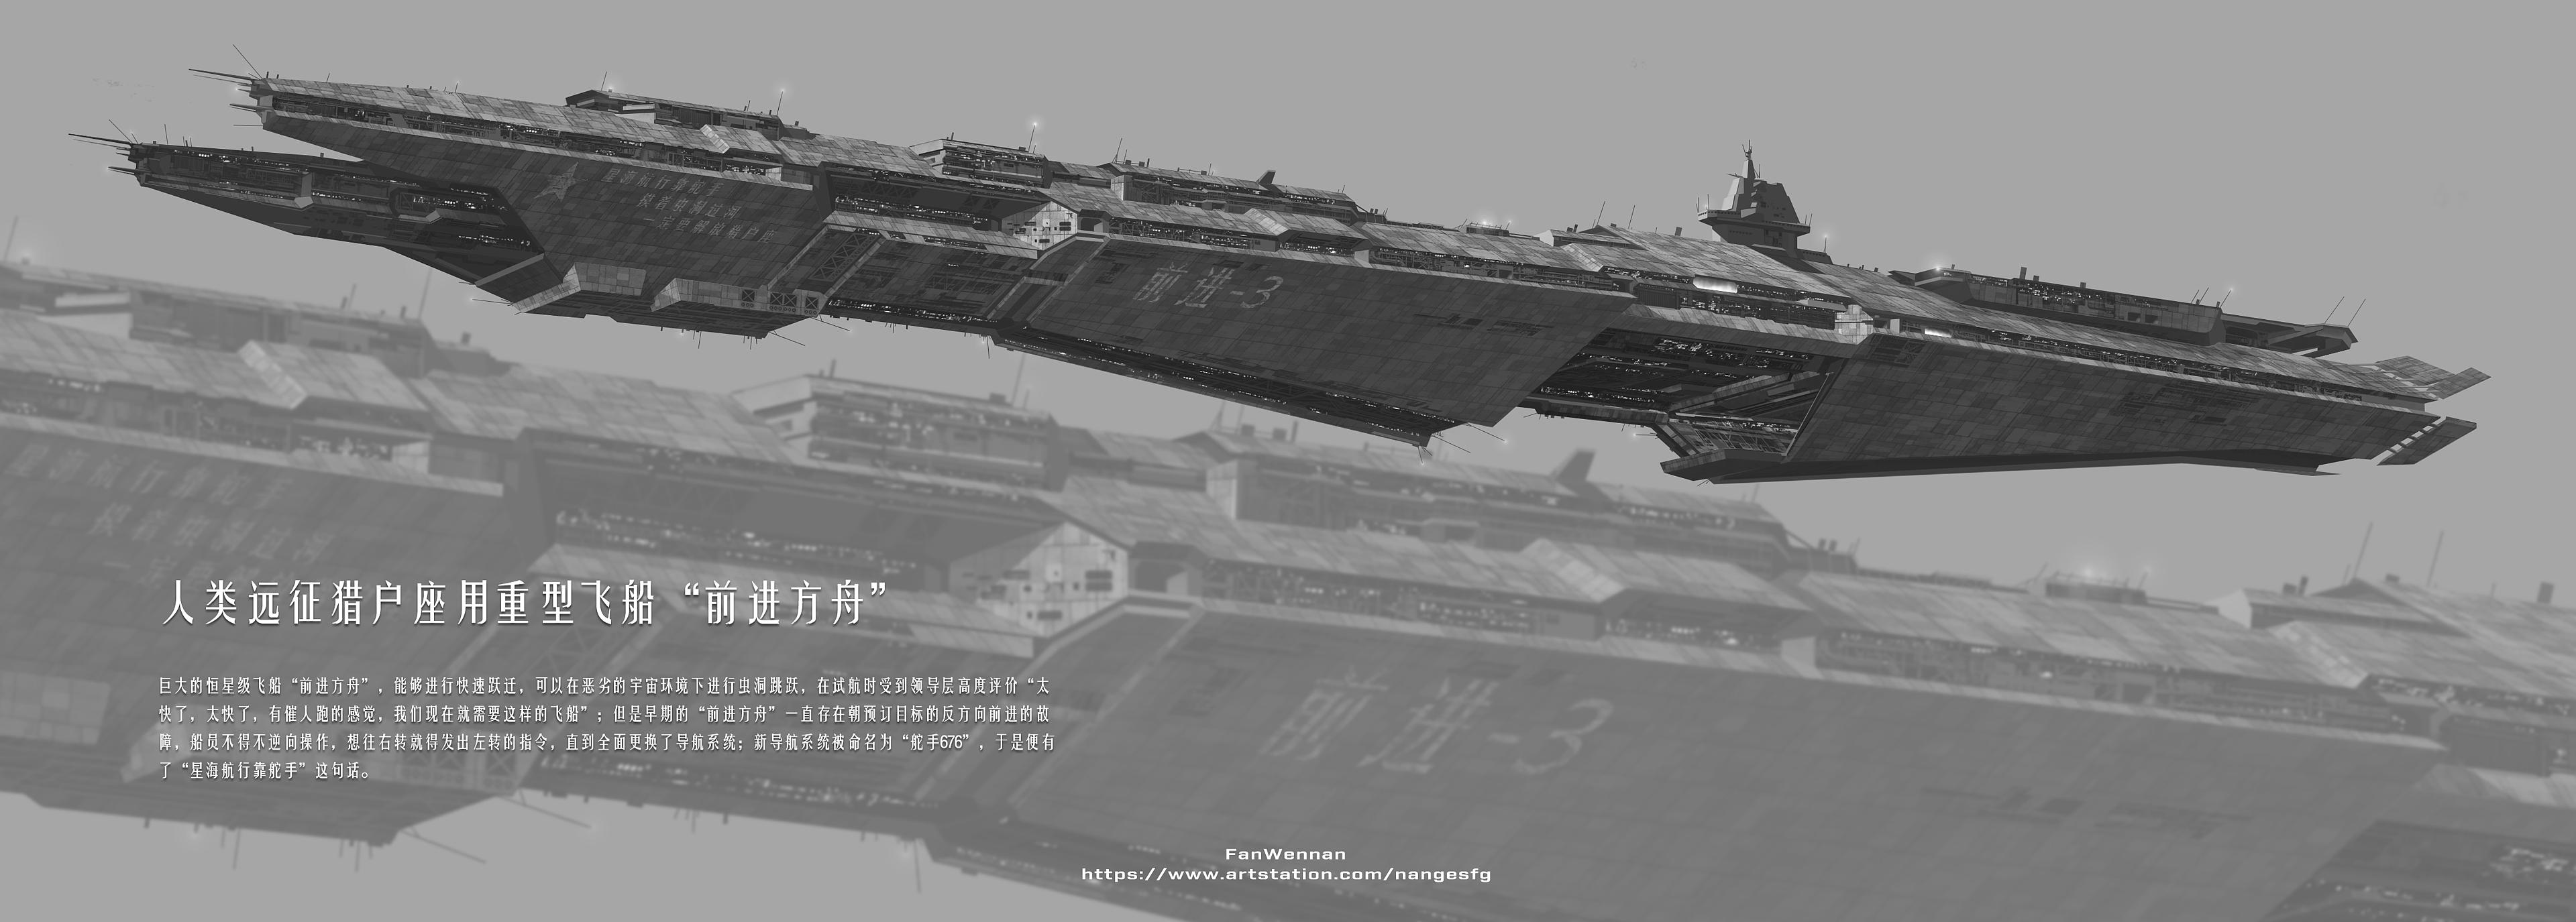 China 2098 Spaceship Propaganda Chinese 3840x1375